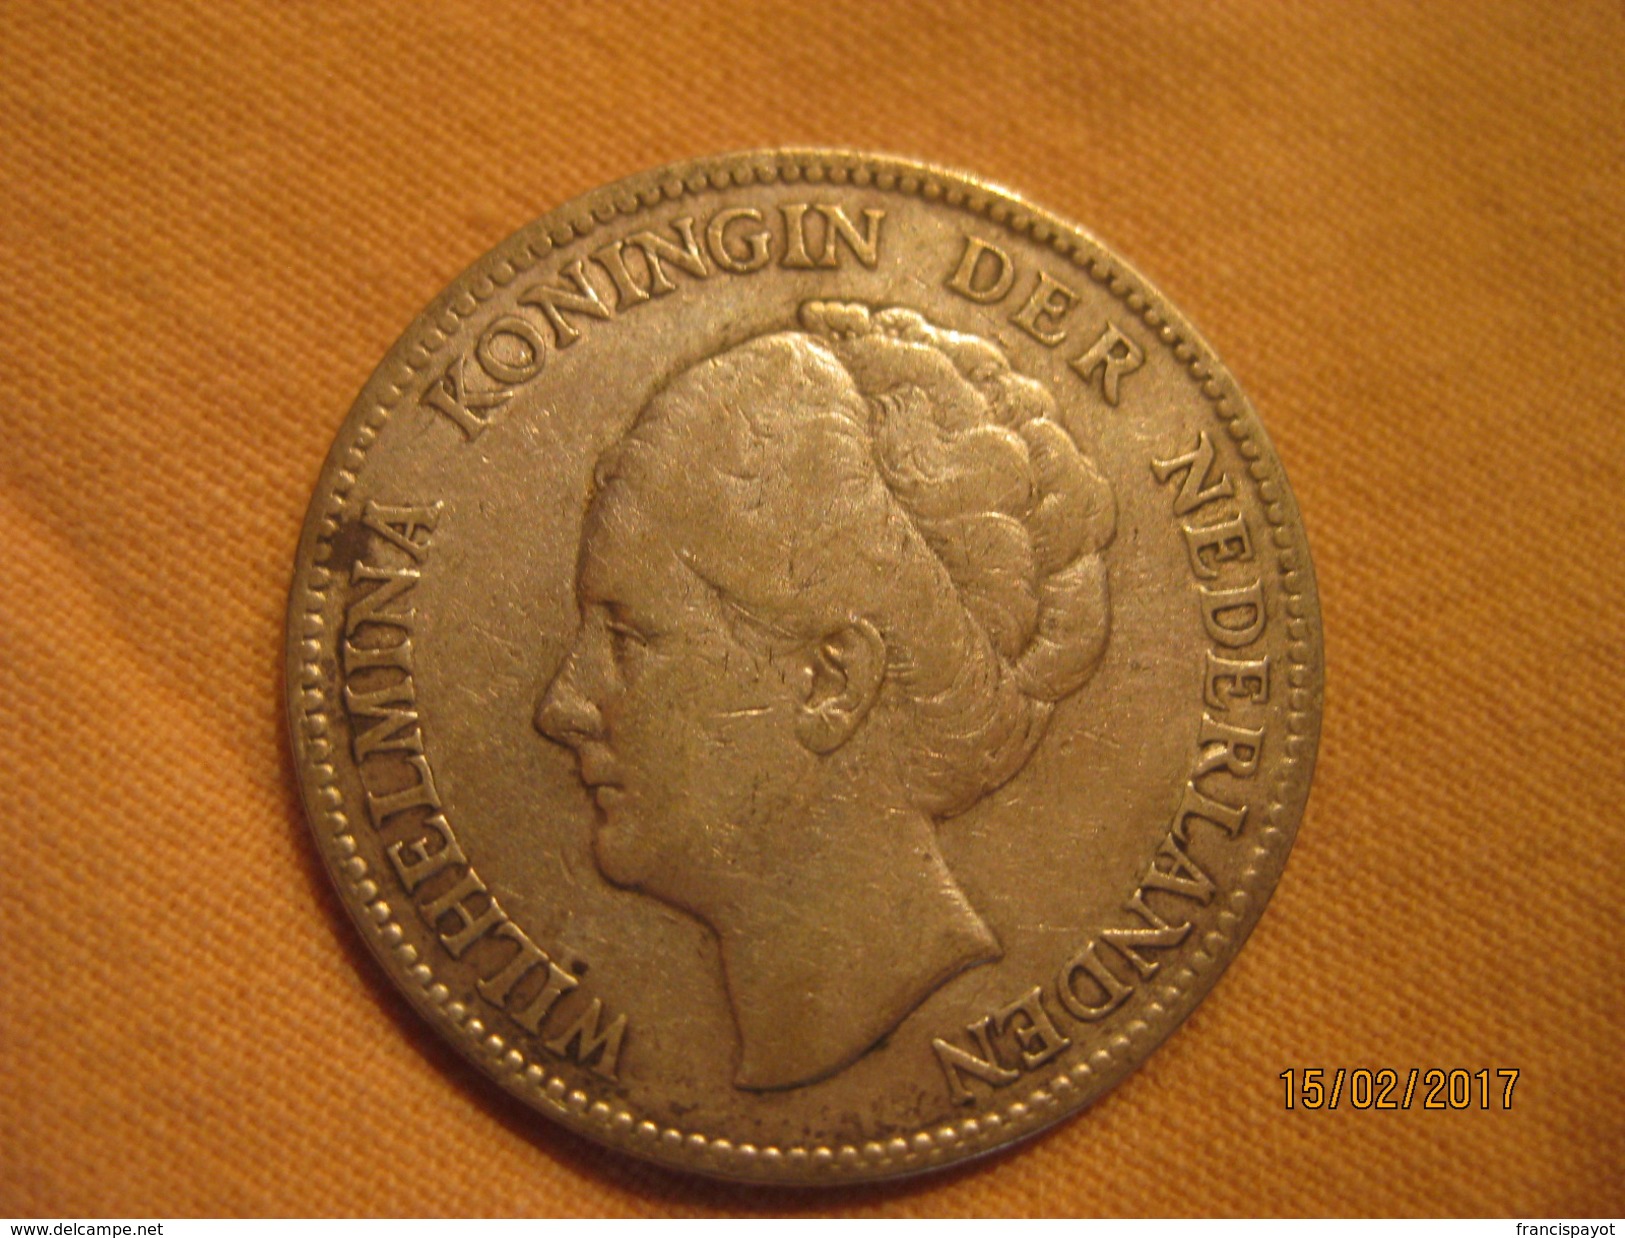 Netherlands: 1 Gulden 1923 - 1 Gulden